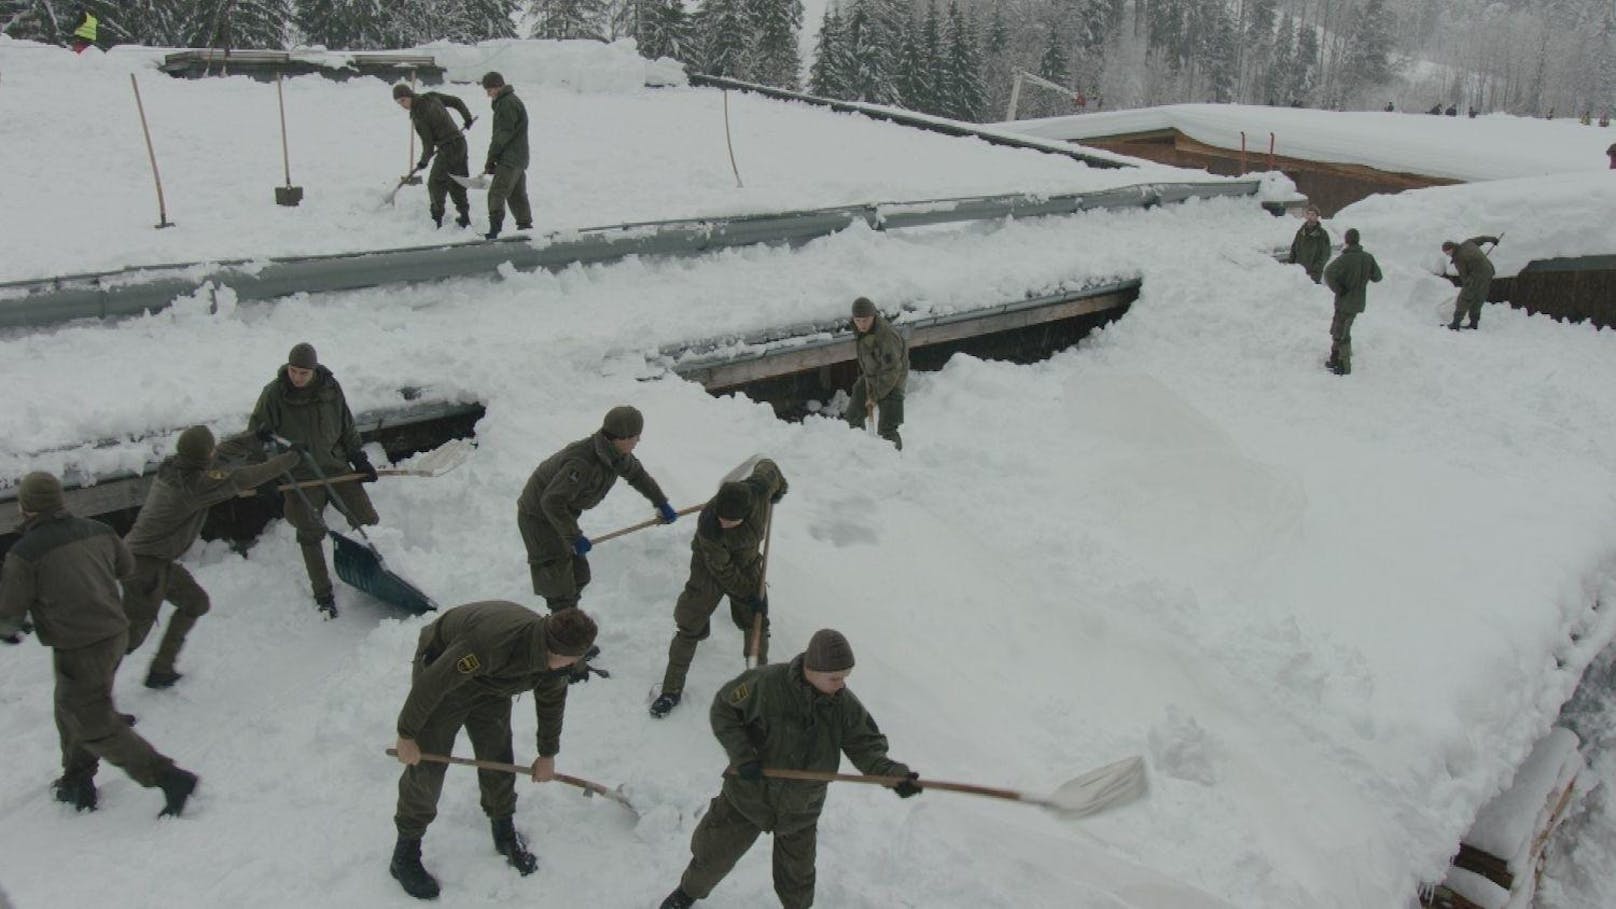 Seit Wochen sind insgesamt 1.700 Soldaten des österreichischen Bundesheeres im Einsatz und haben oft tagelang kräftezehrende Arbeiten wie Schneeschaufeln verrichtet.